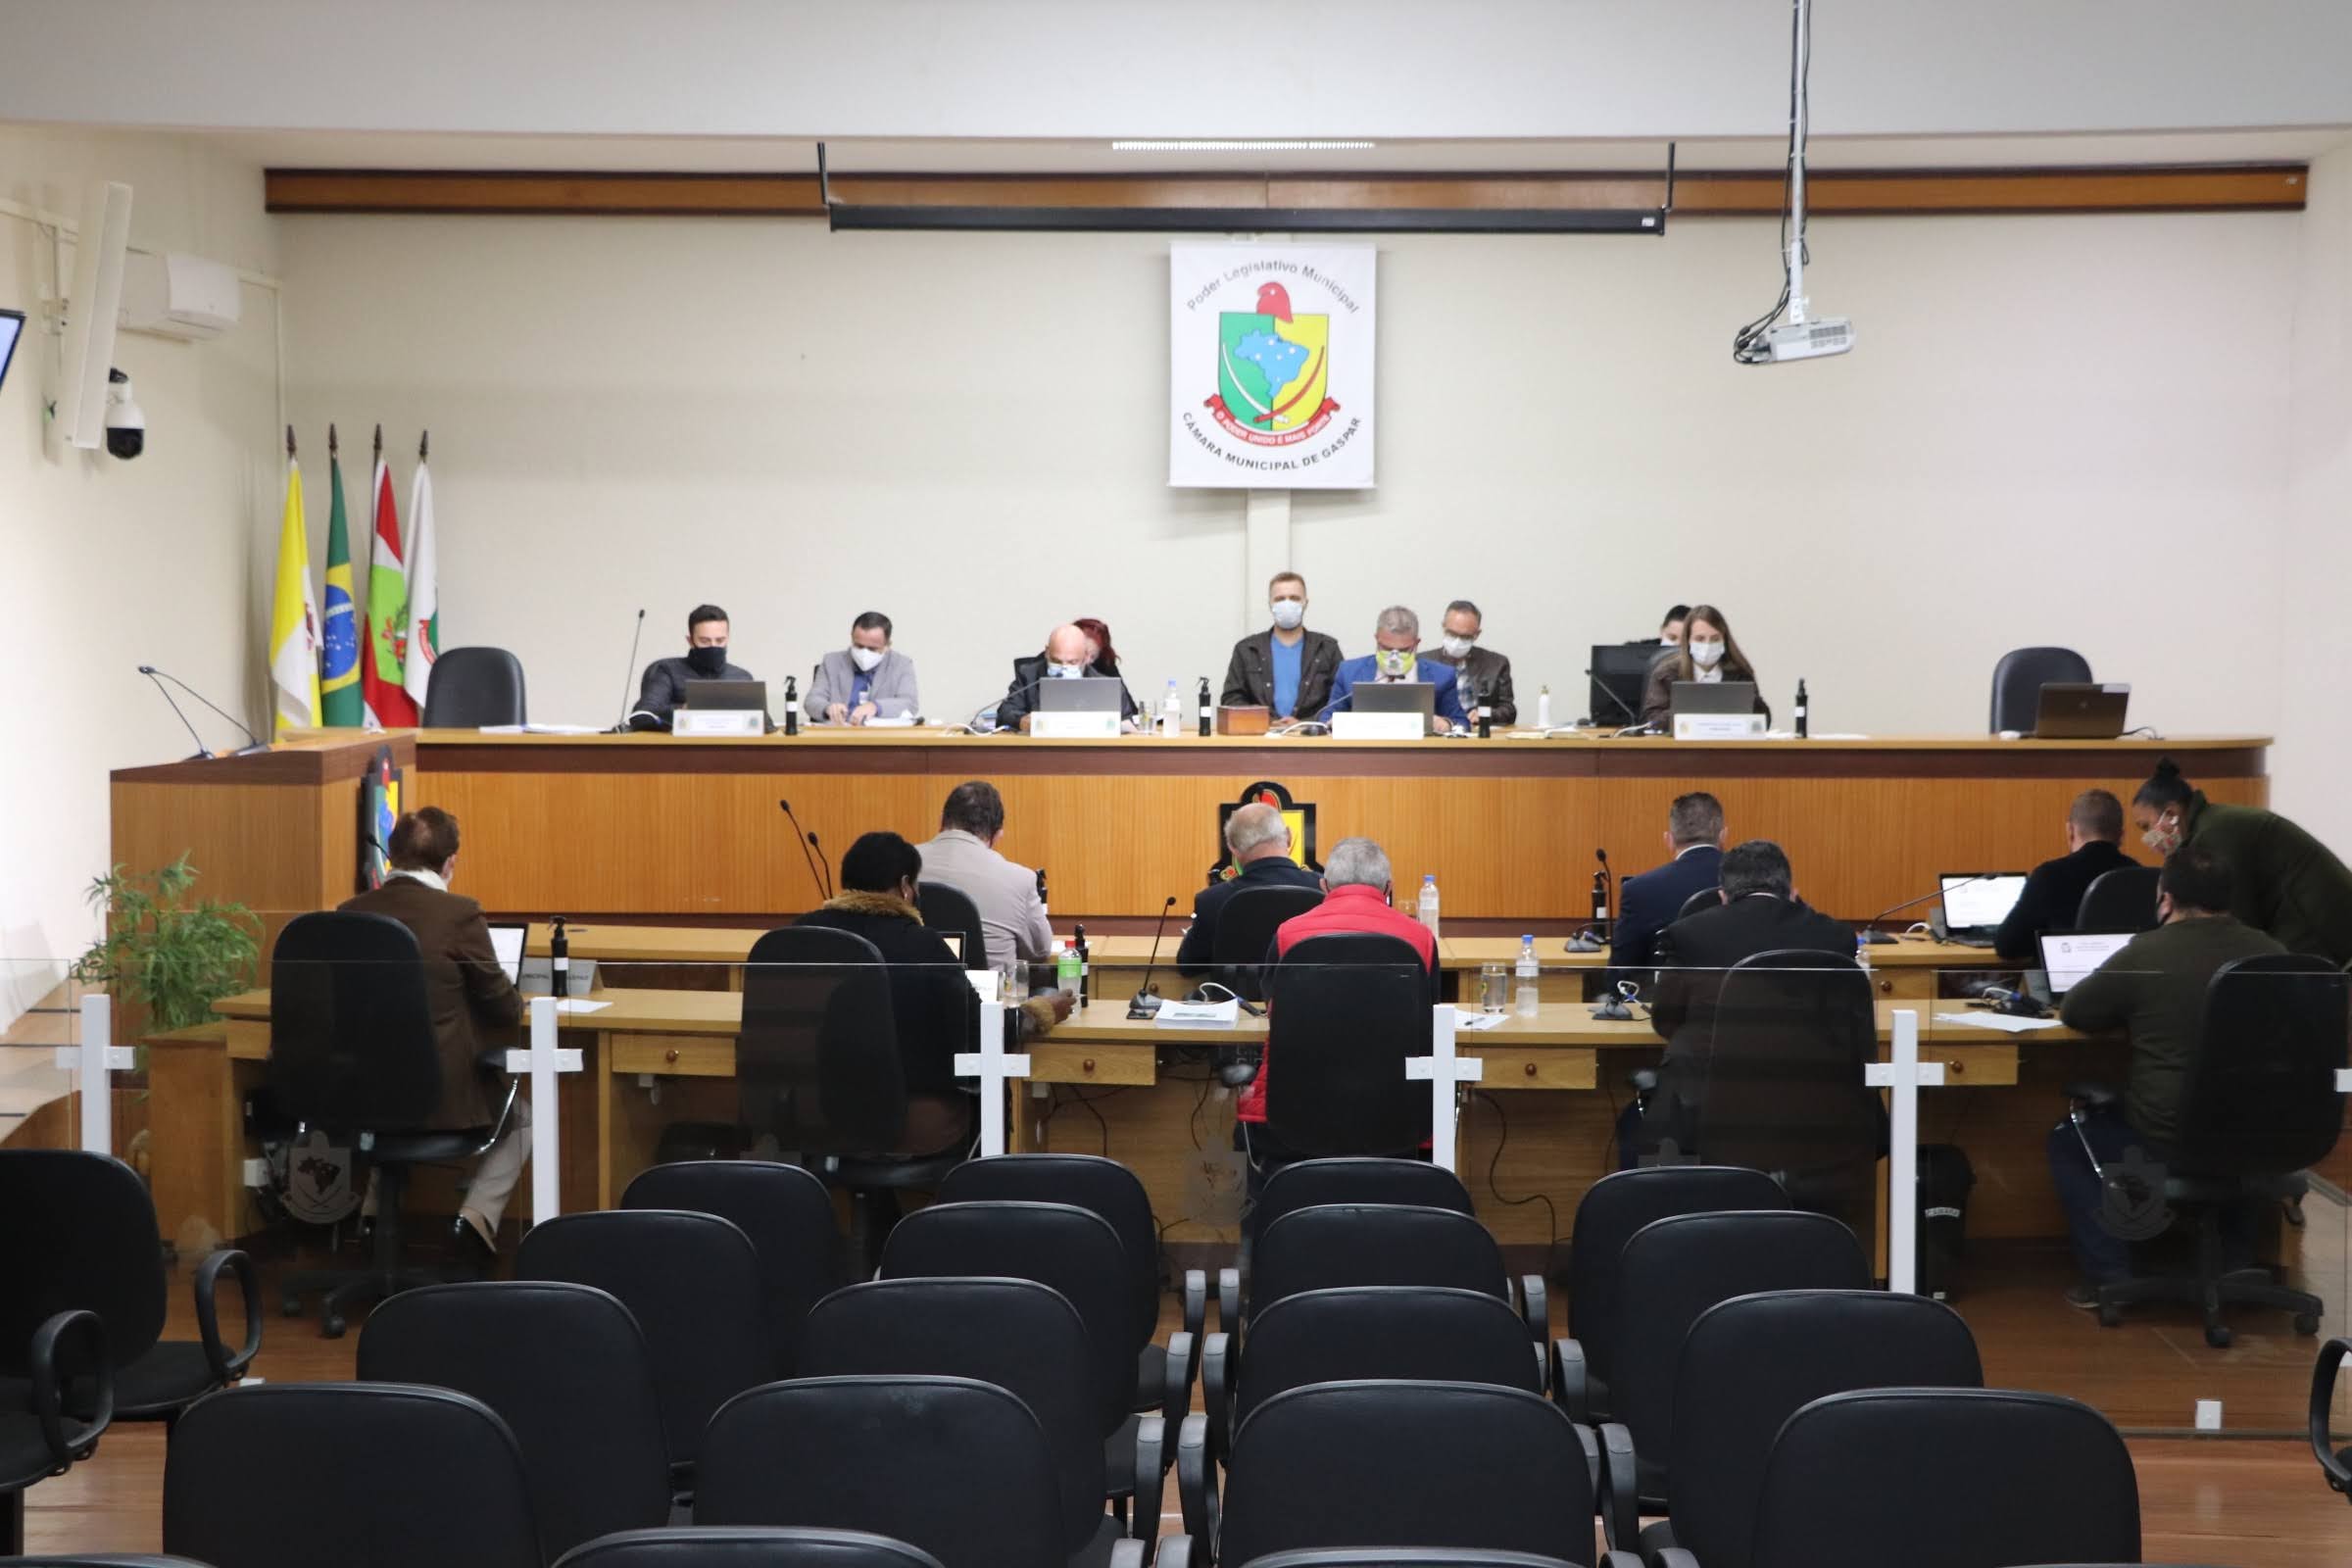 Câmara promove nesta quinta audiência virtual sobre Plano Plurianual de Gaspar